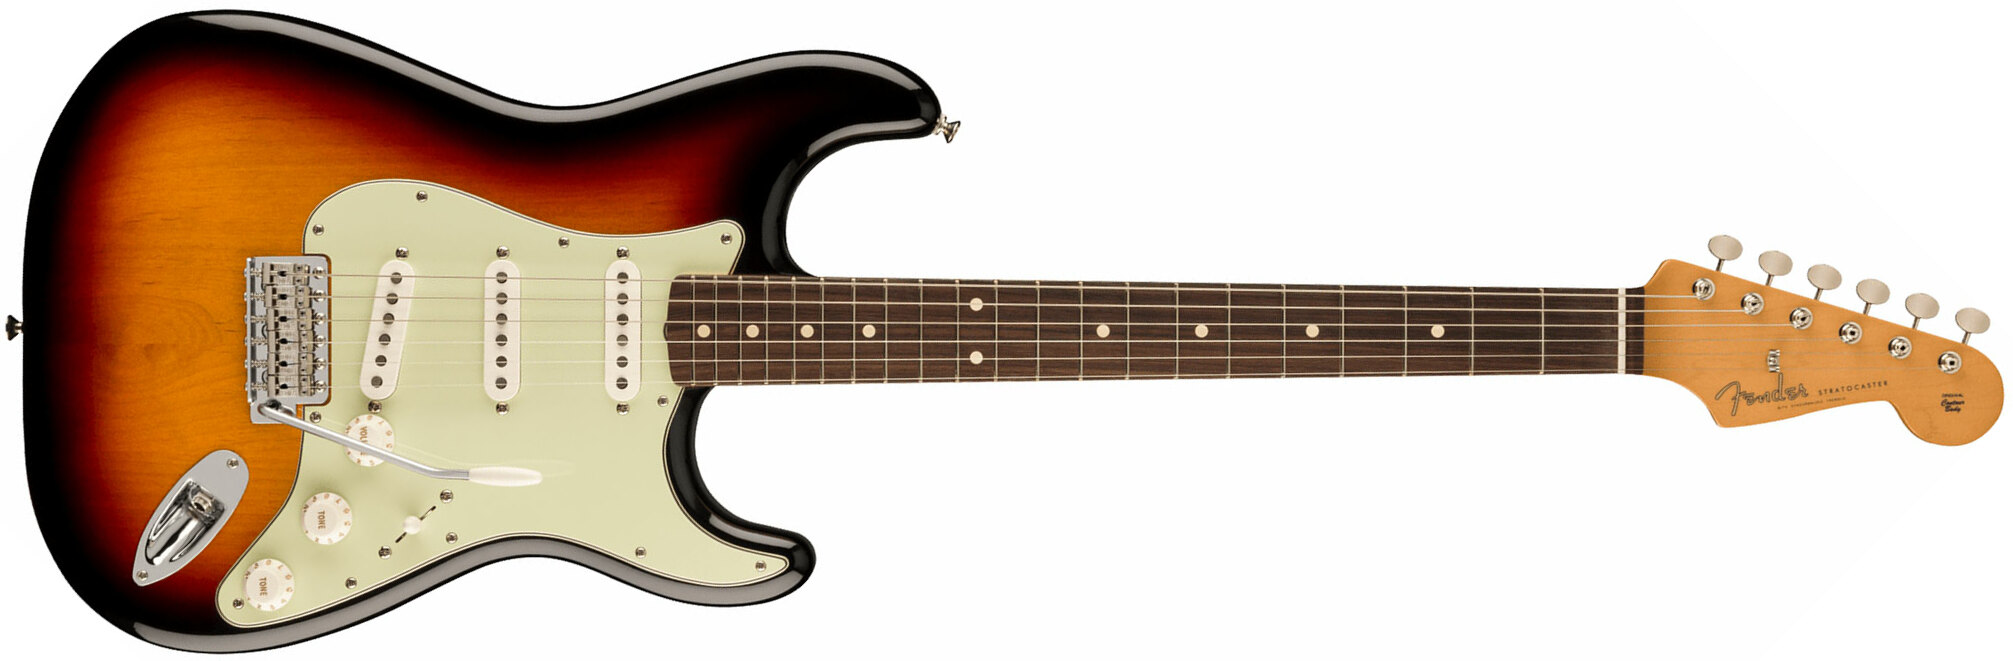 Fender Strat 60s Vintera 2 Mex 3s Trem Rw - 3-color Sunburst - Elektrische gitaar in Str-vorm - Main picture